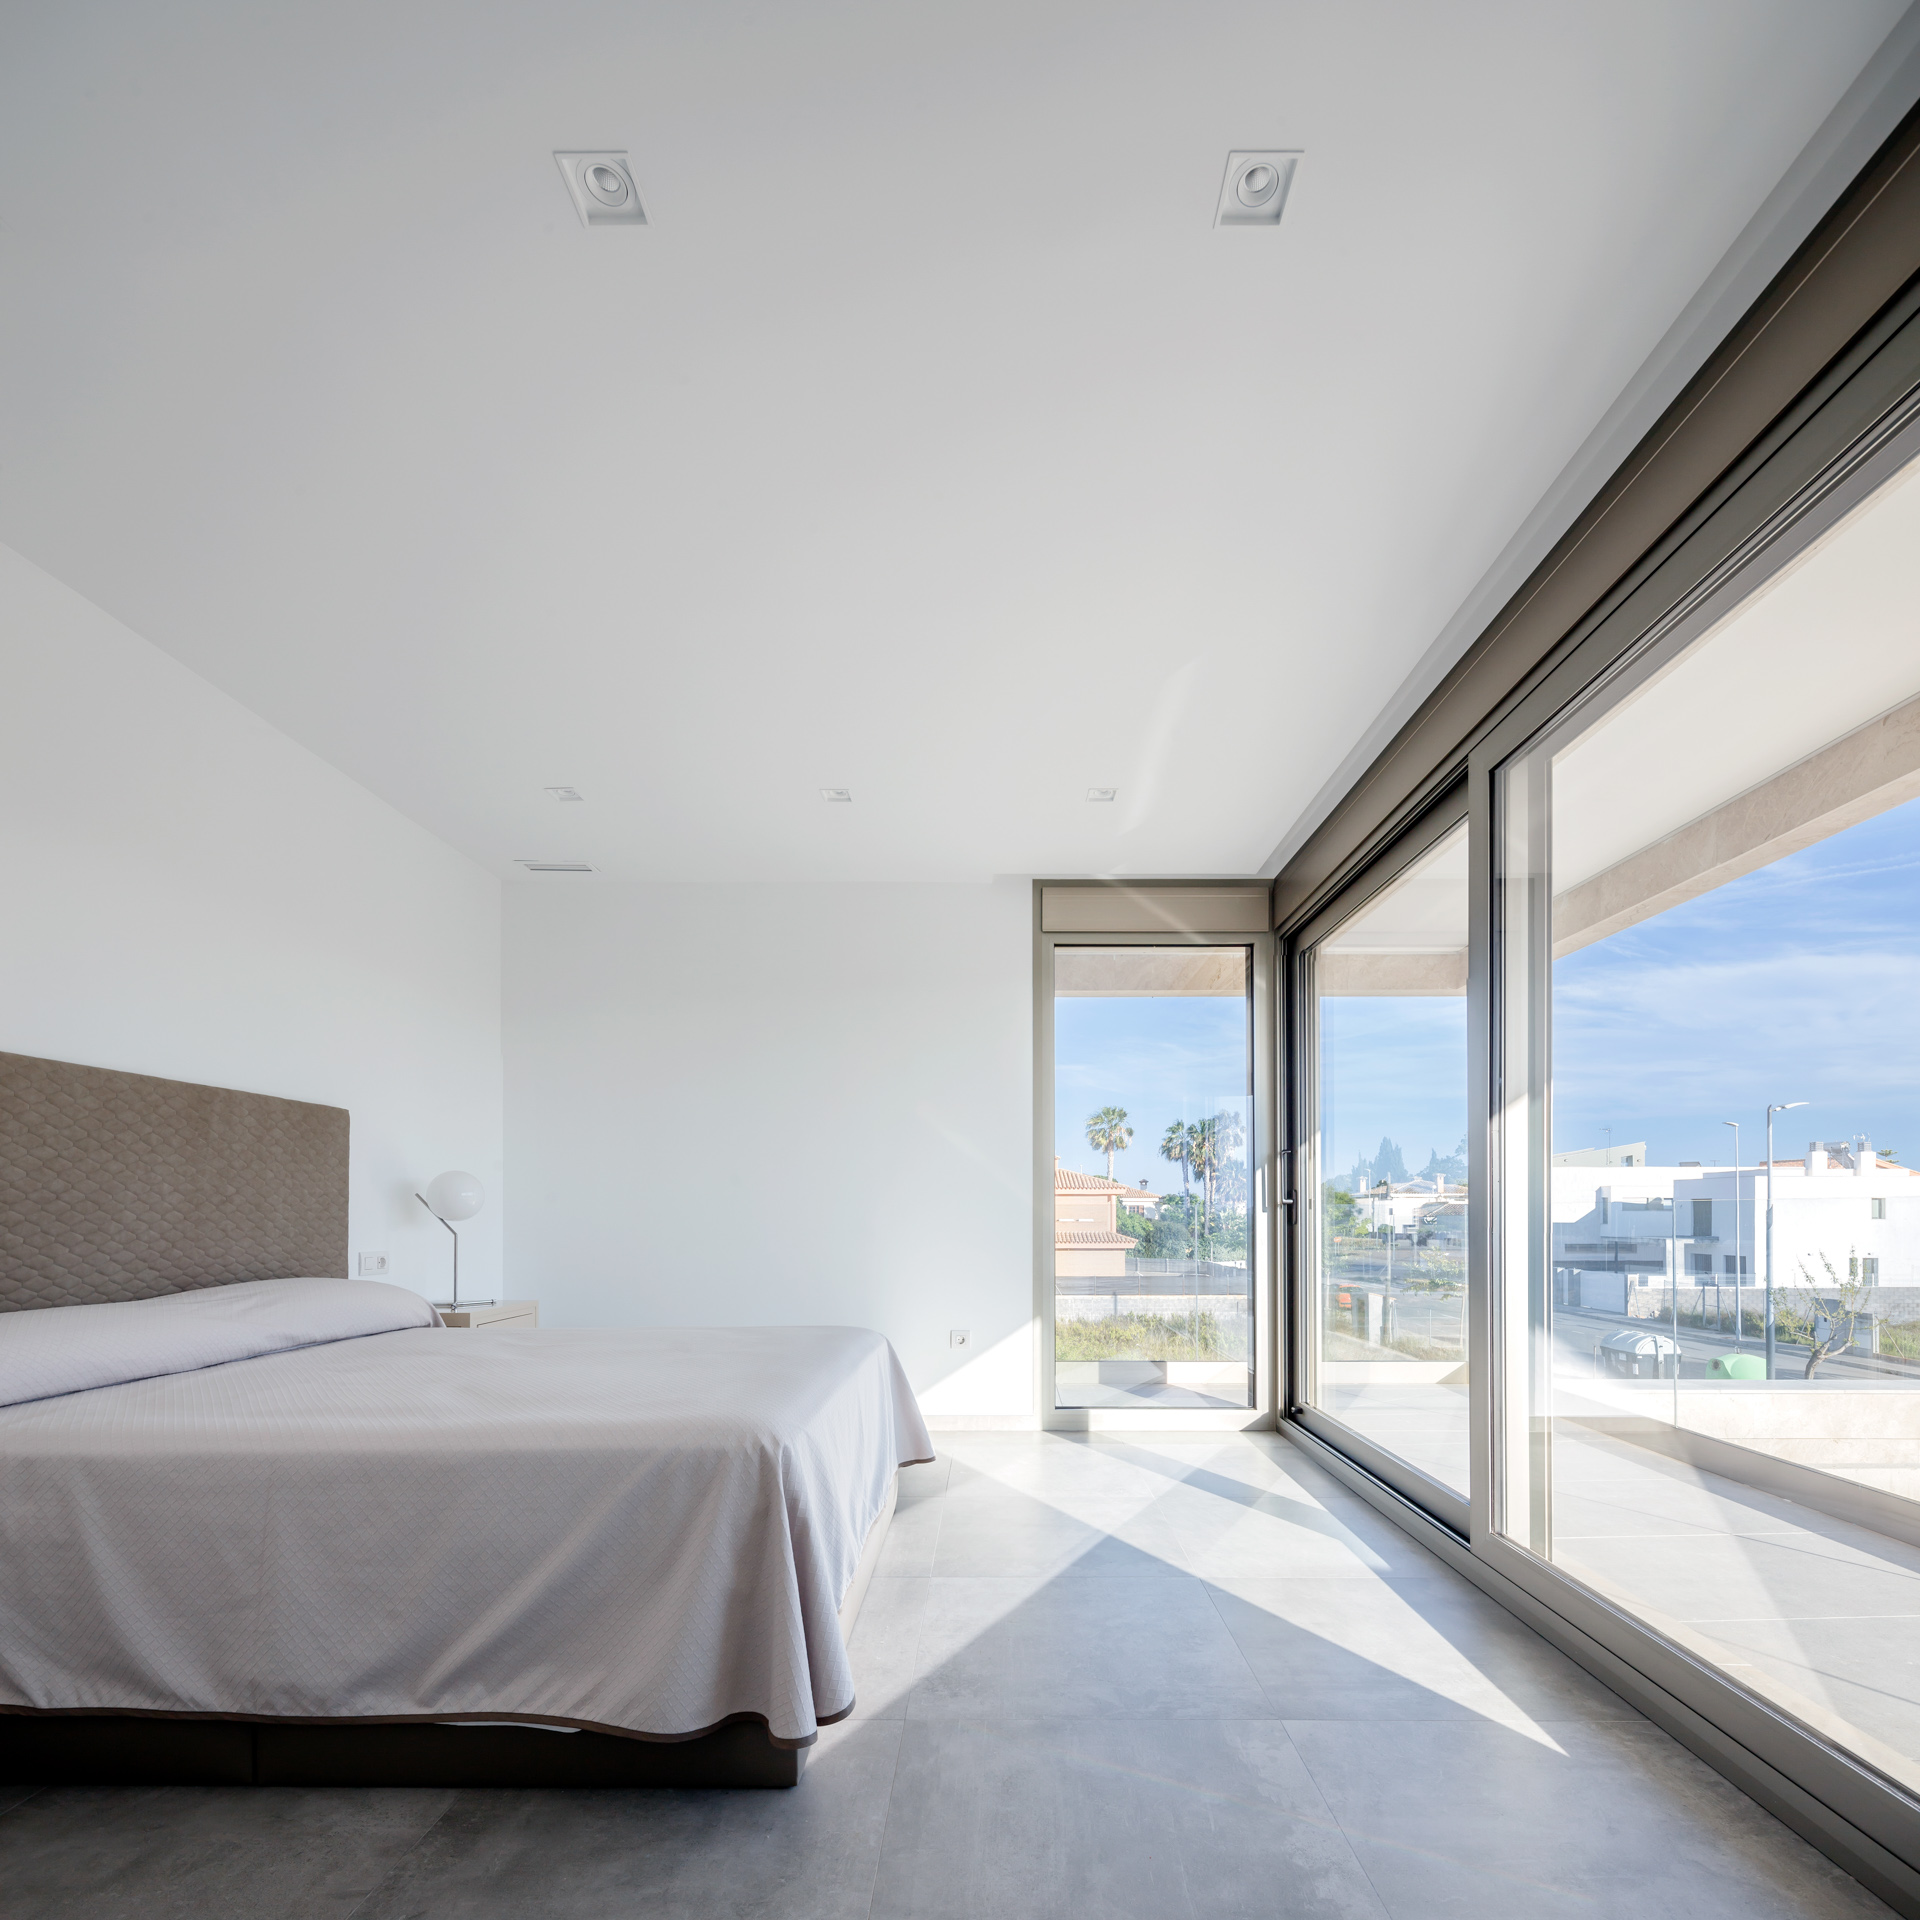 Dormitorio moderno_ventanal_cristal_luz_Balcón_Arquitectos valencia_proyectos